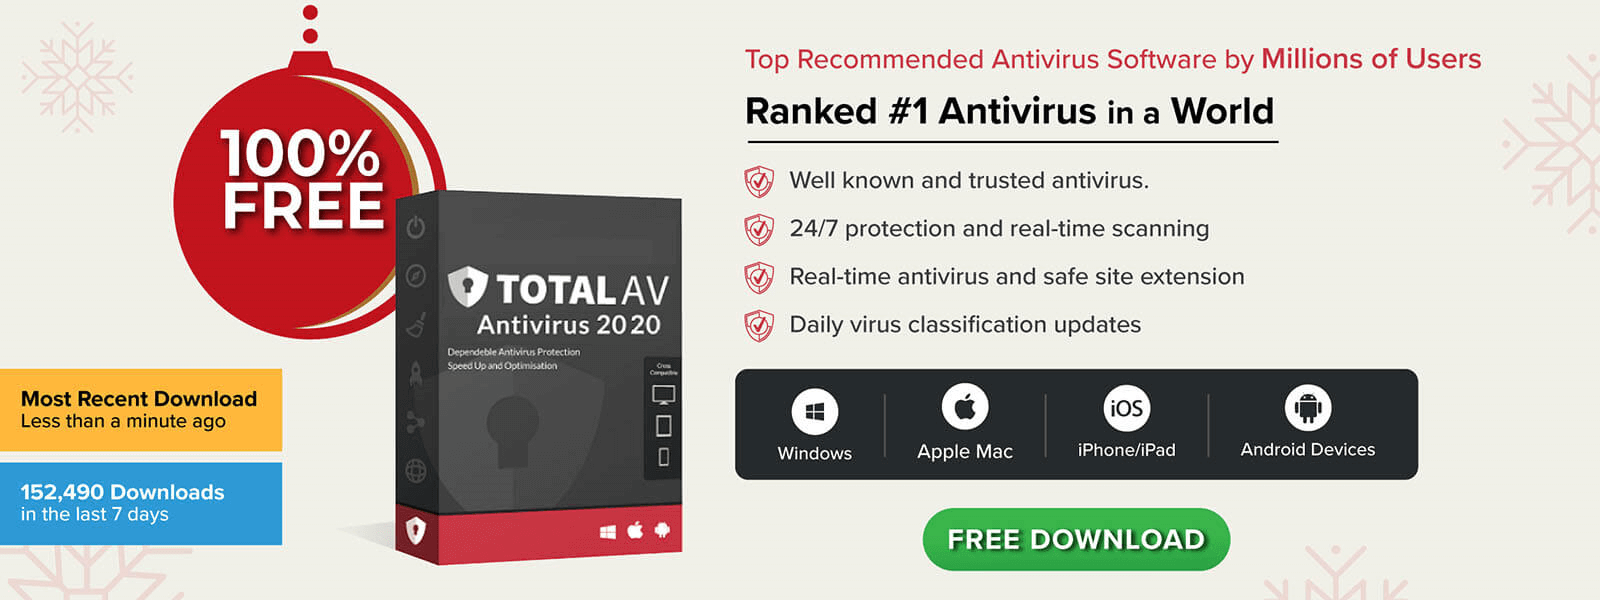 avg free antivirus software for mac